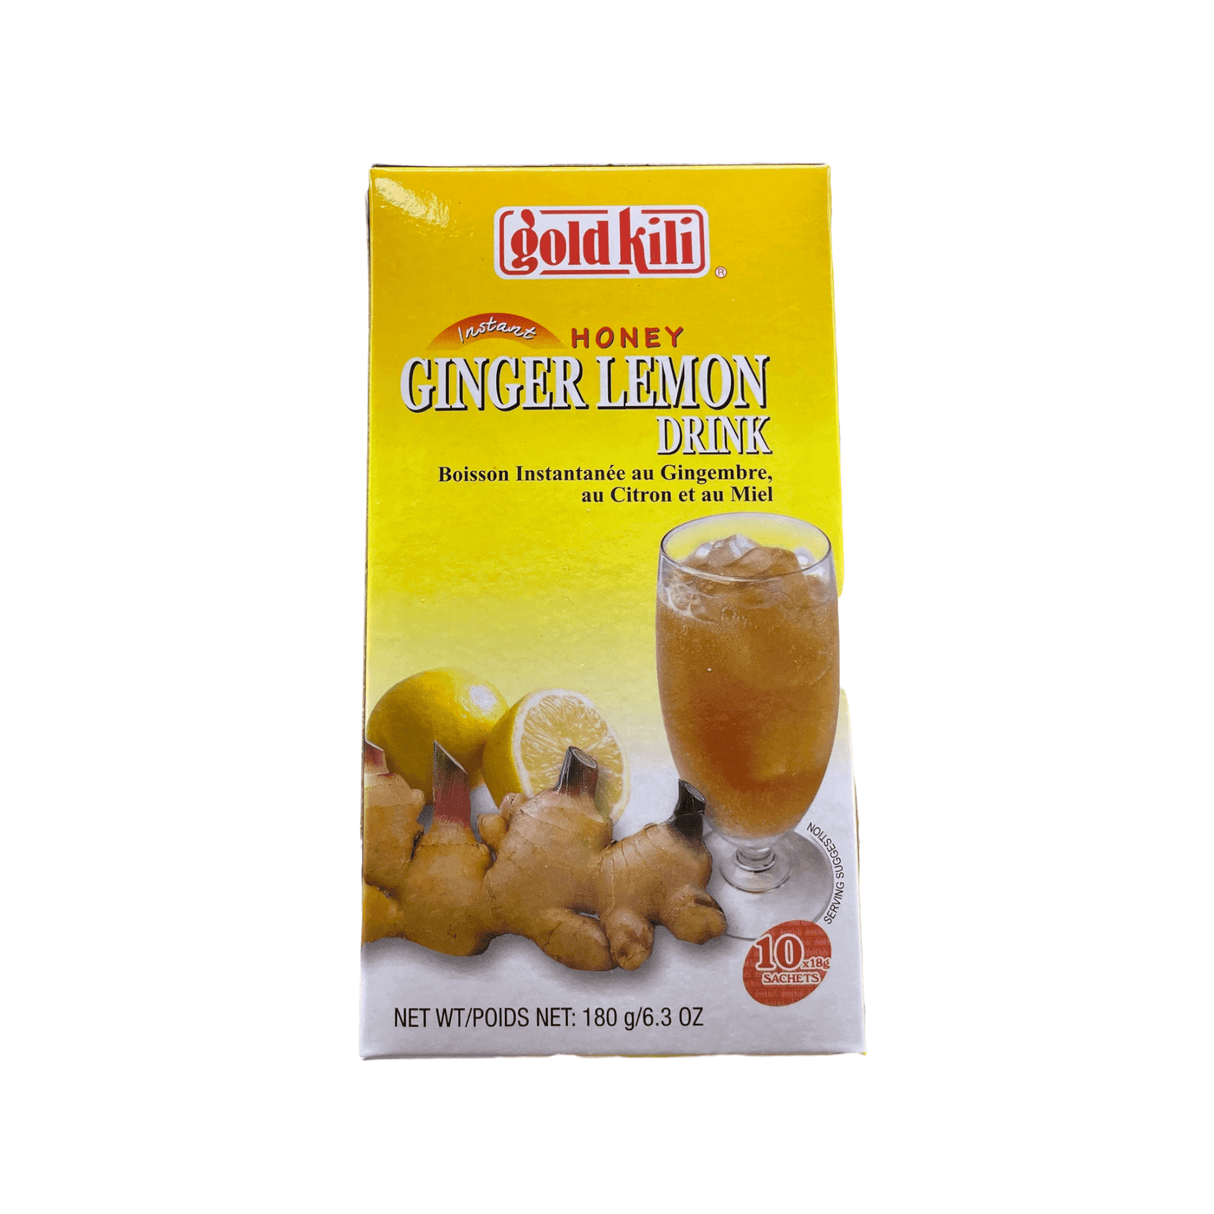 Gold Kili Instant Honey Ginger Lemon Drink